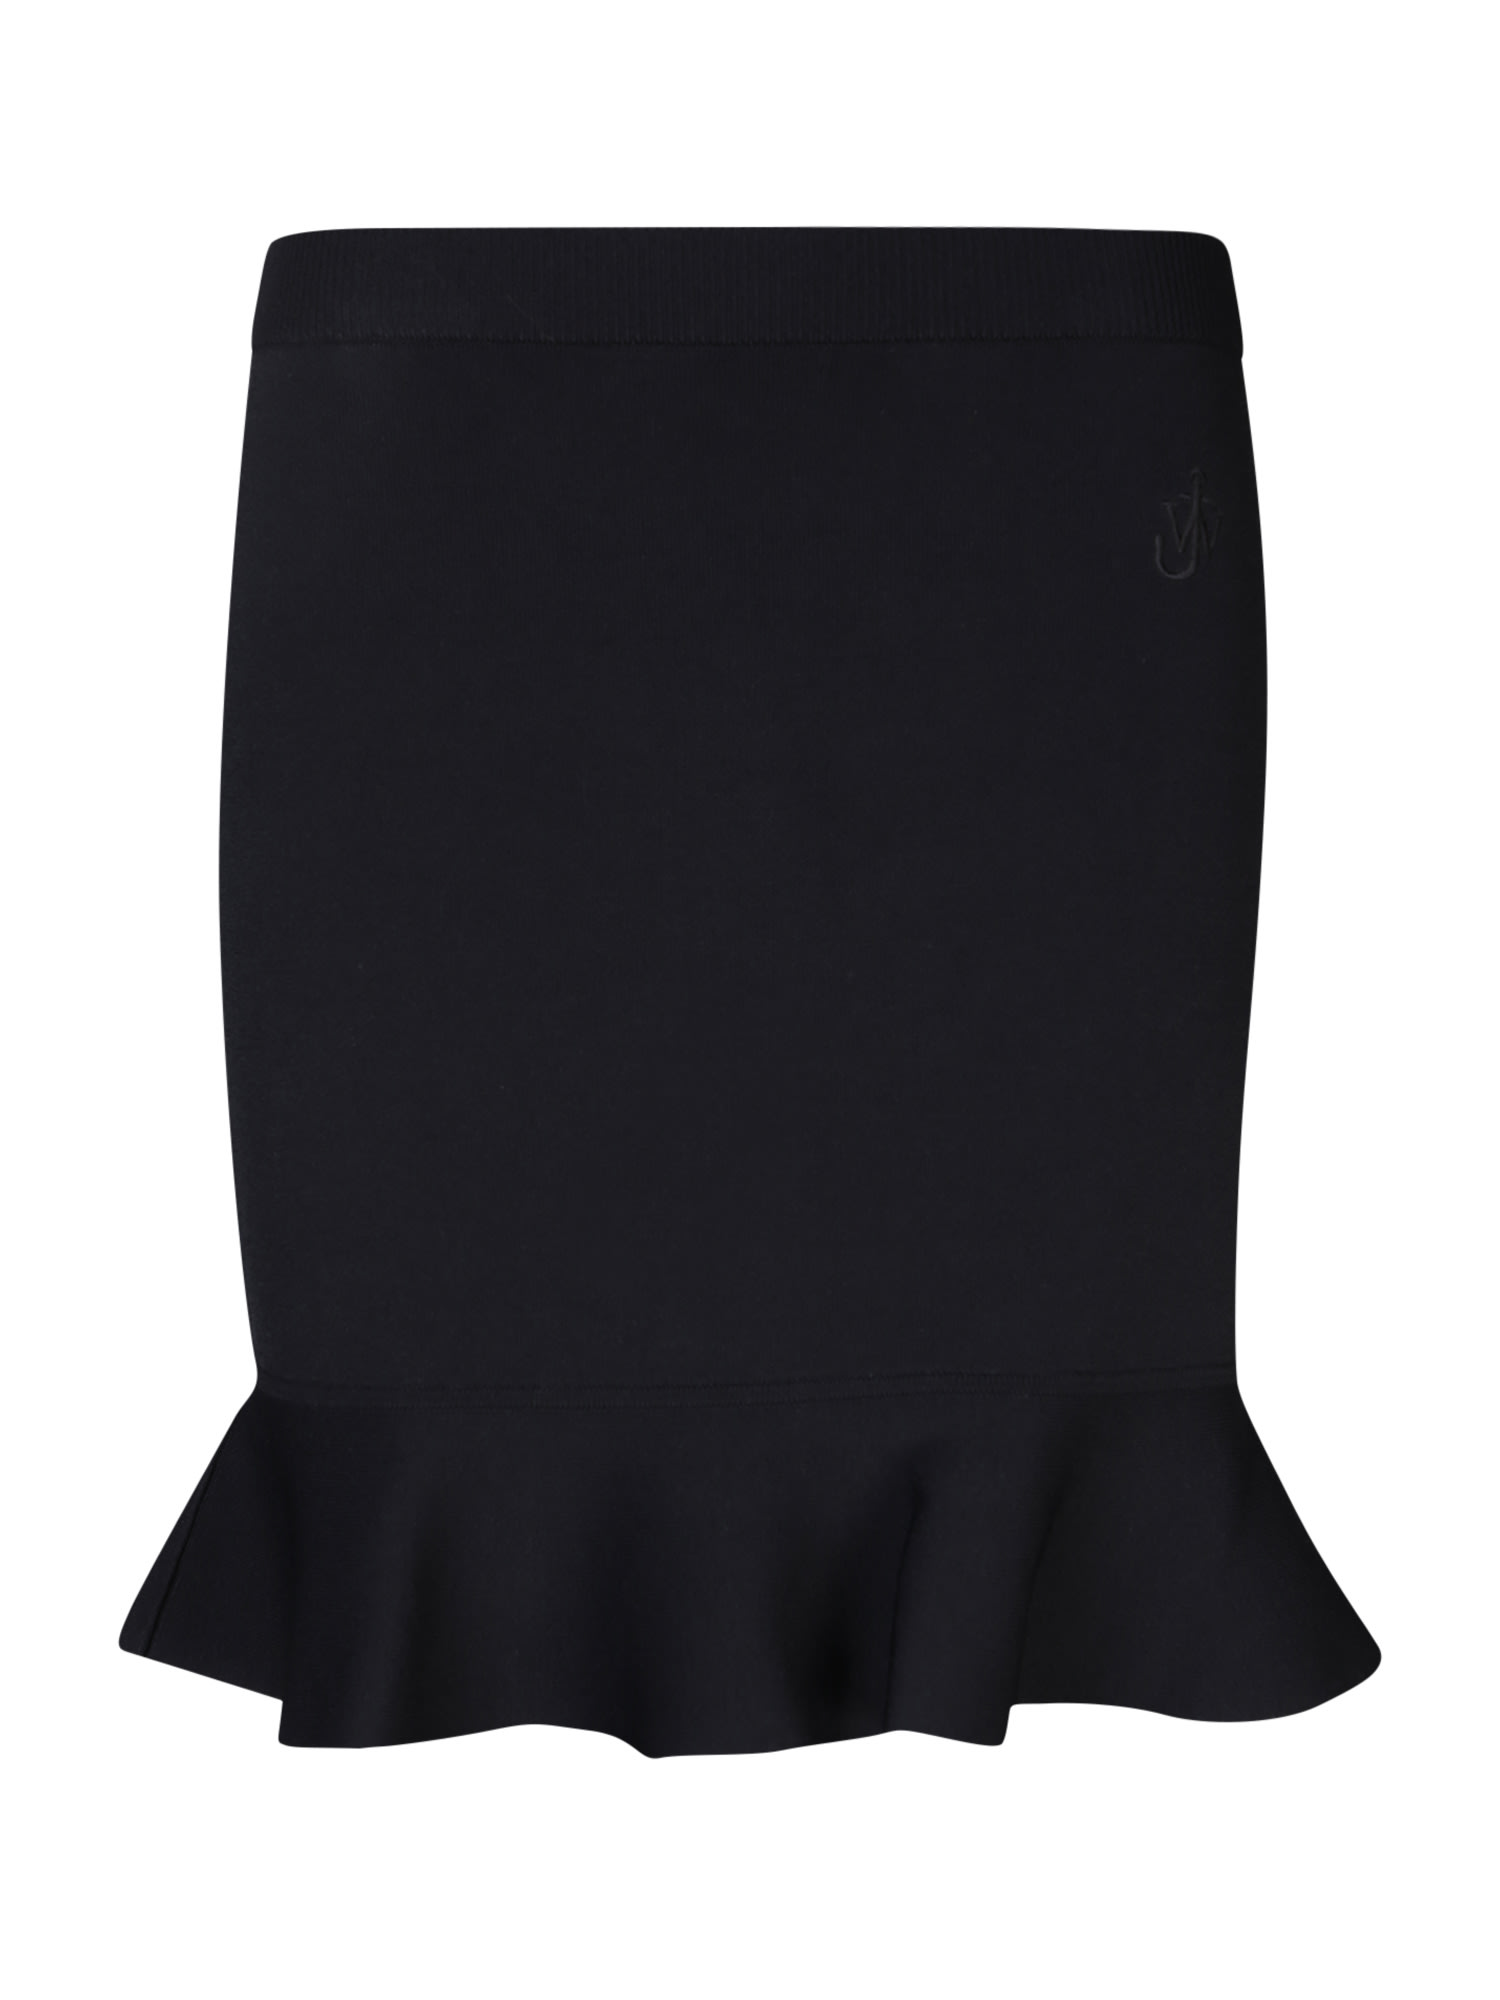 J.W. Anderson Ruffles Black Miniskirt